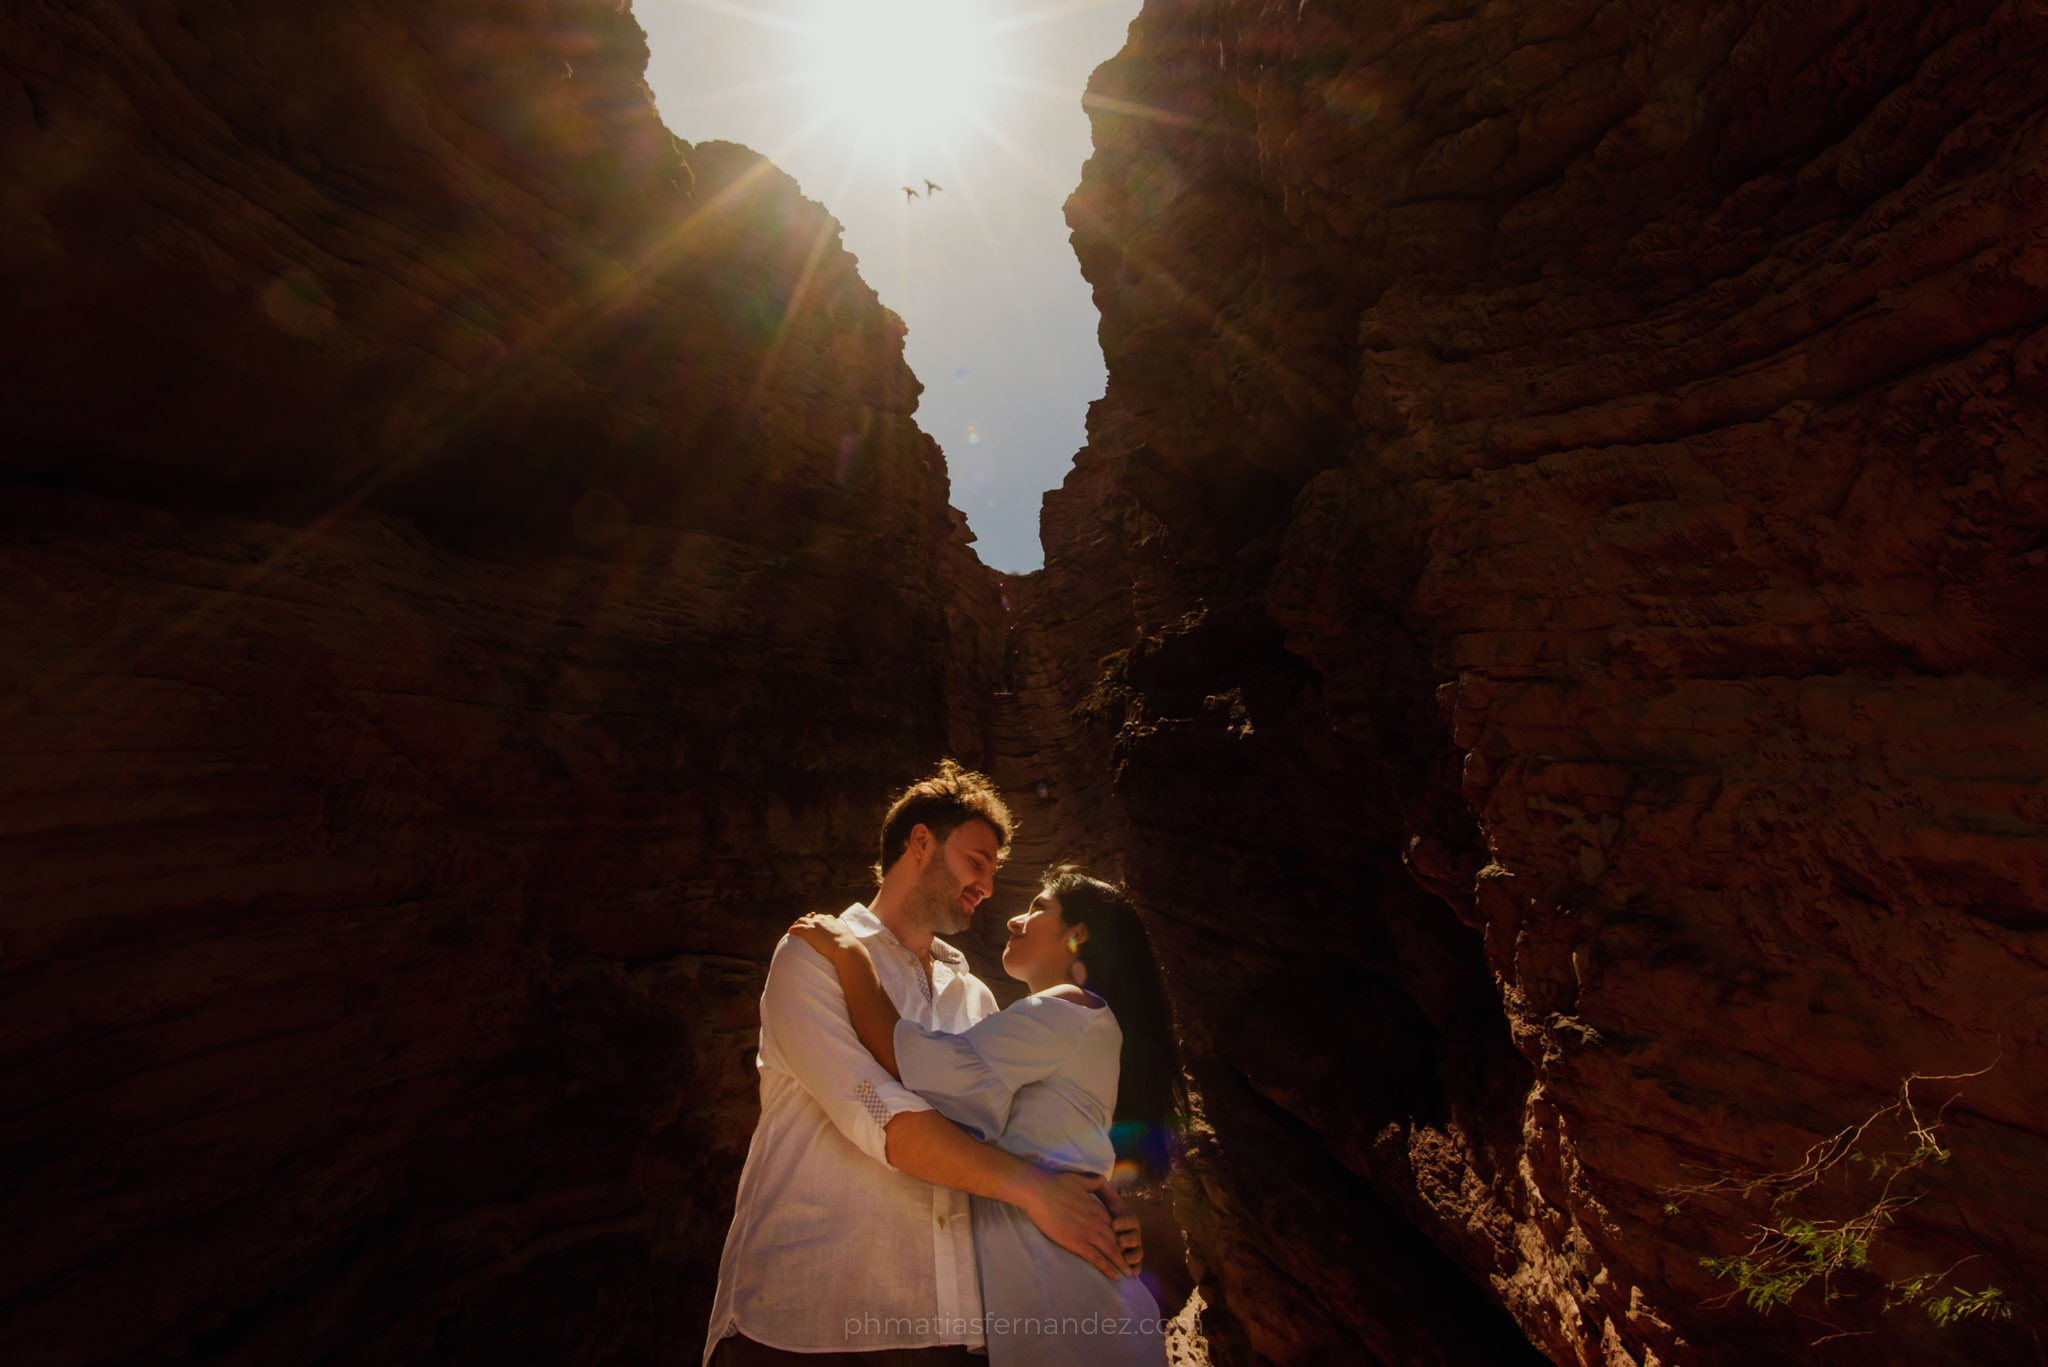 Johanna & Patrick - phmatiasfernandez.com - fotografo de bodas